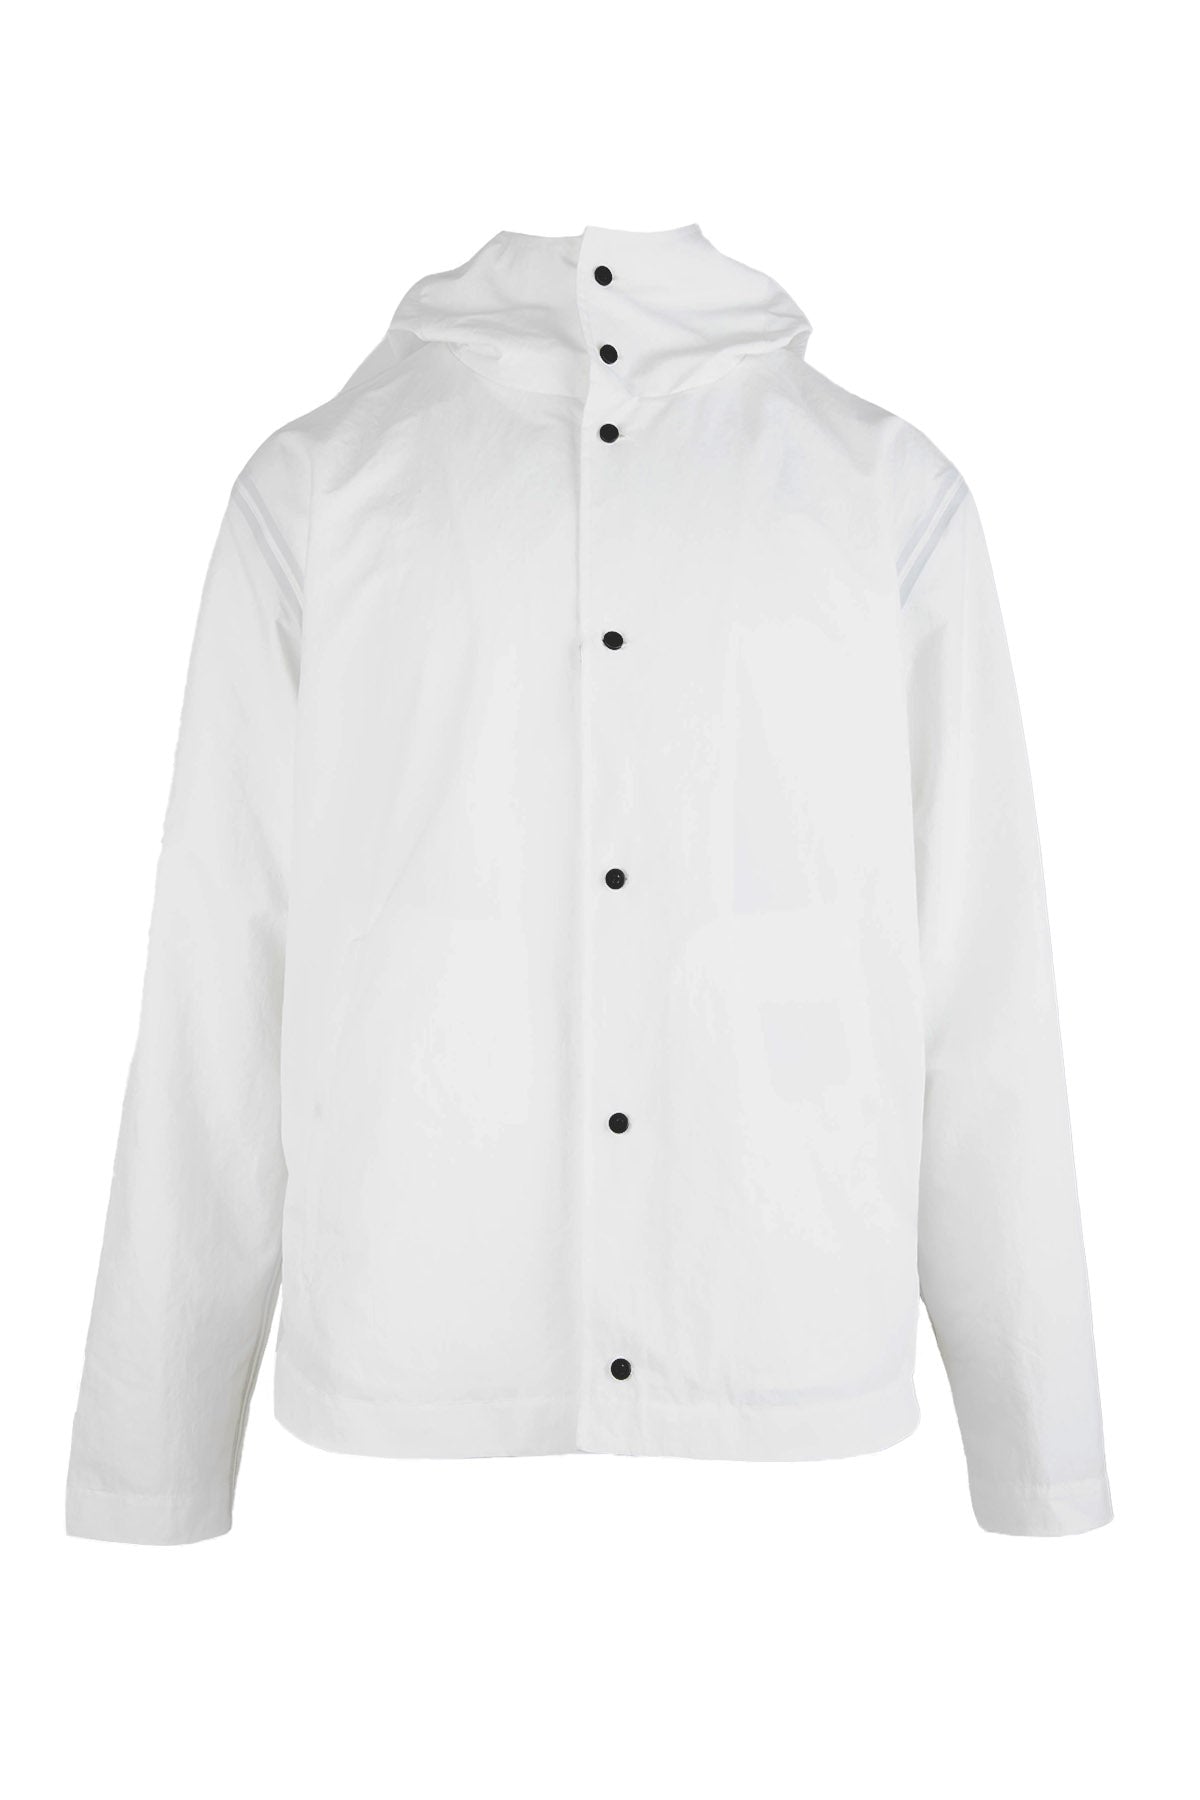 Herno Düğmeli Rüzgarlık Ceket-Libas Trendy Fashion Store